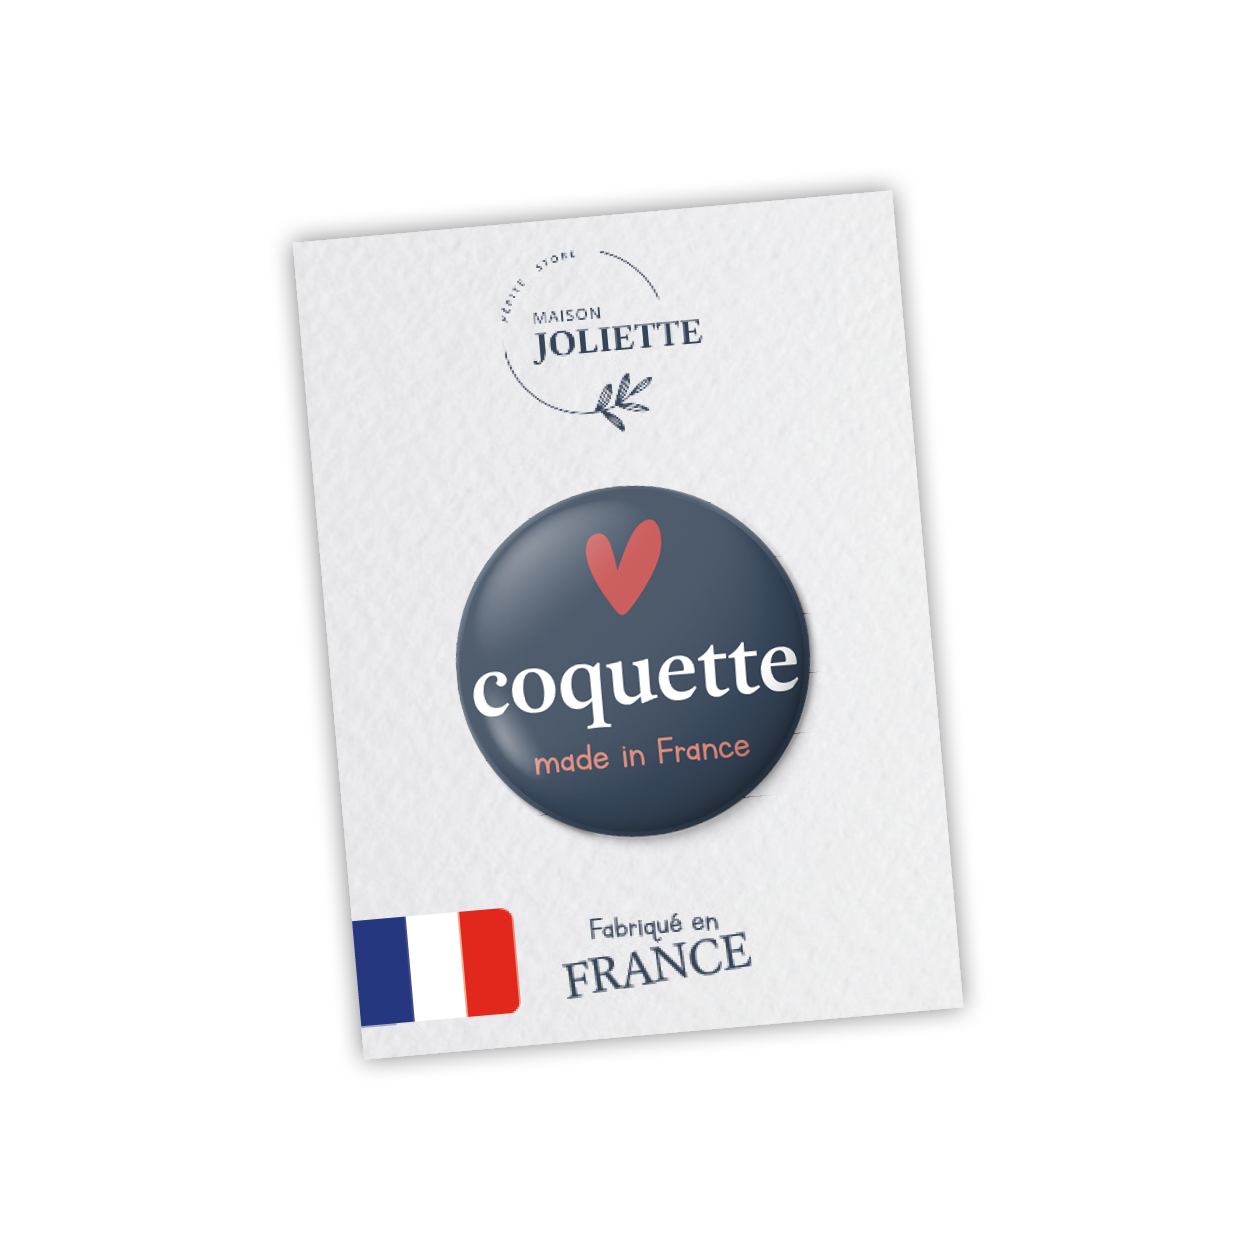 Coquette - Magnet #7